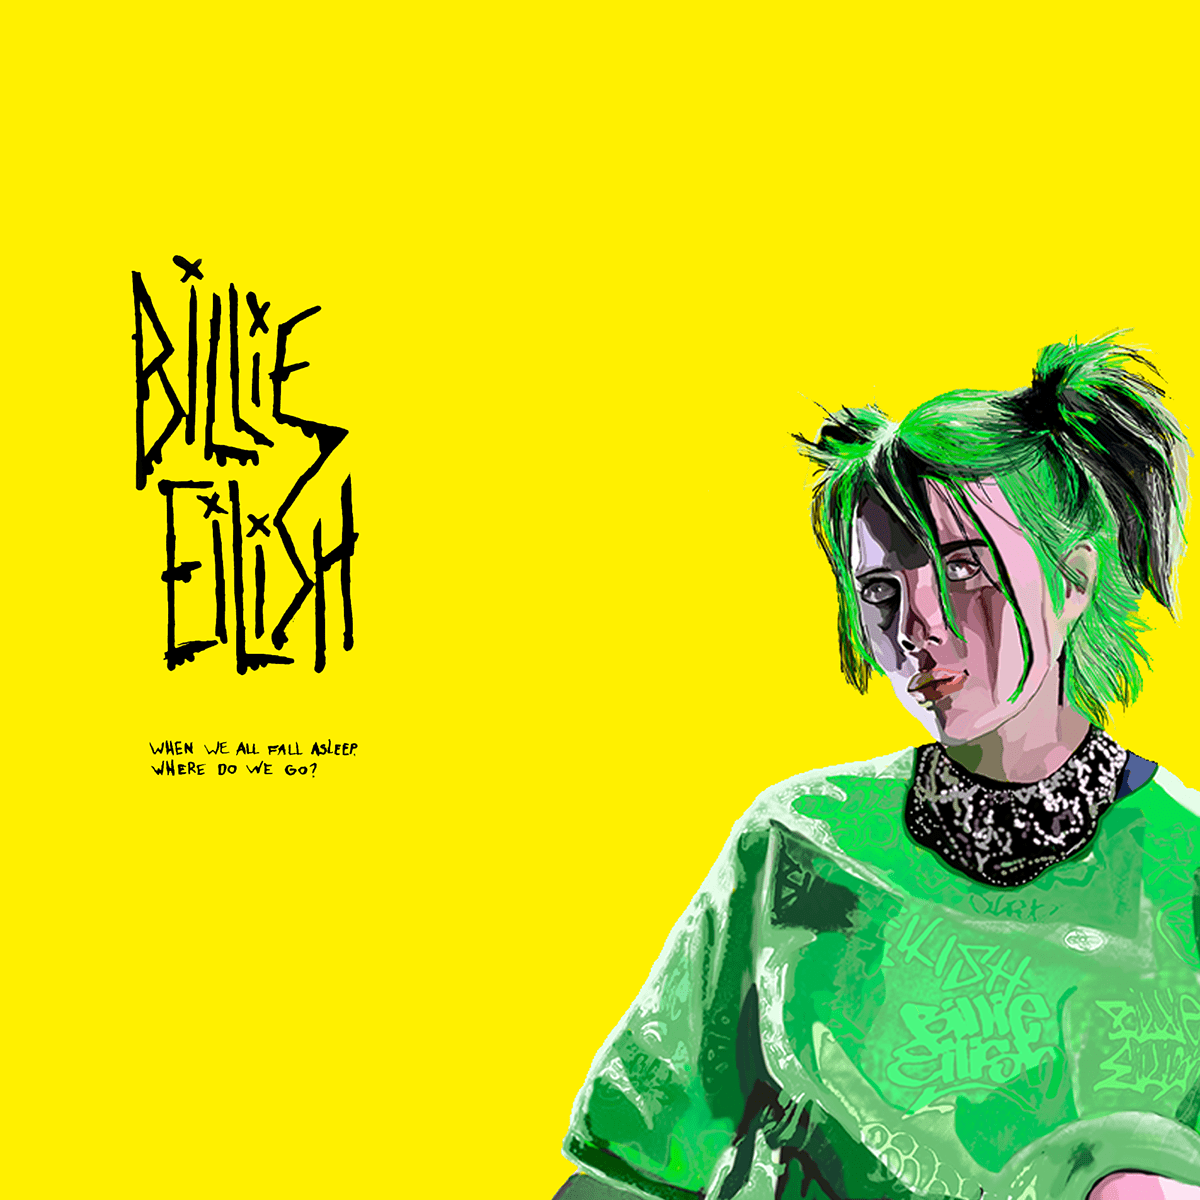 Billie eilish albüm indir.